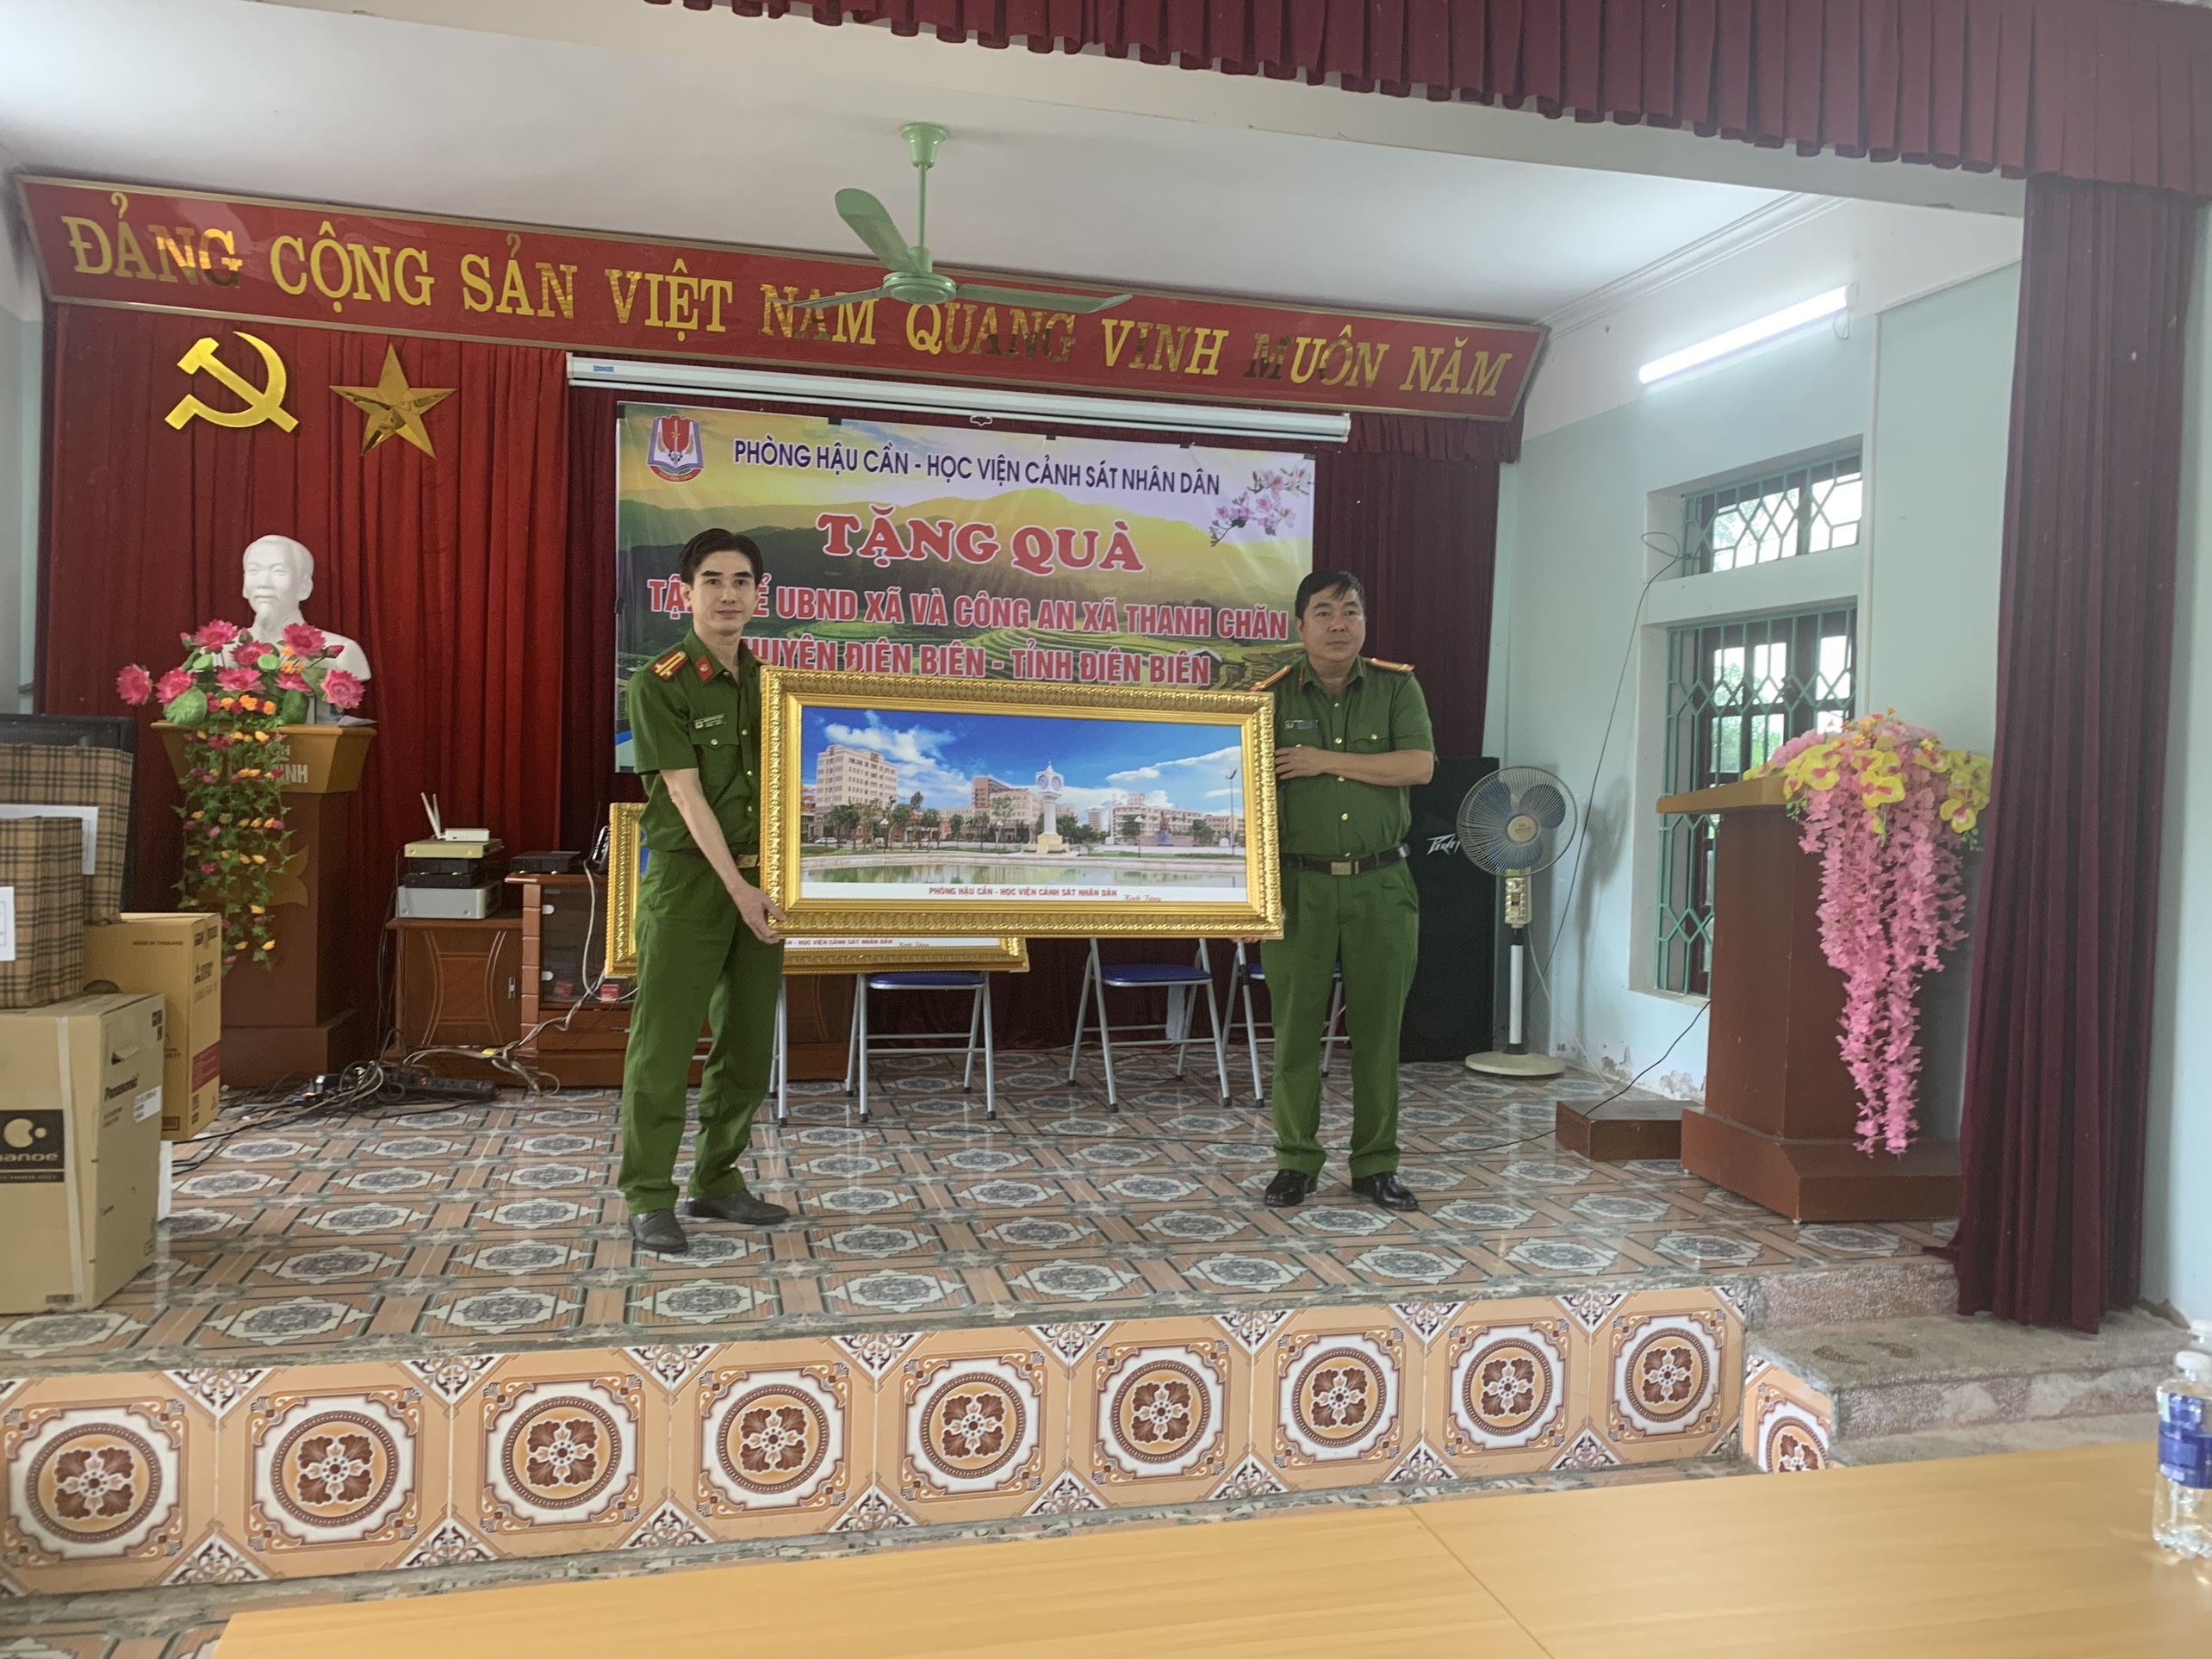 Đoàn làm việc, tặng quà UBND xã và Ban Chỉ huy Công an xã Thanh Chăn, huyện Điện Biên